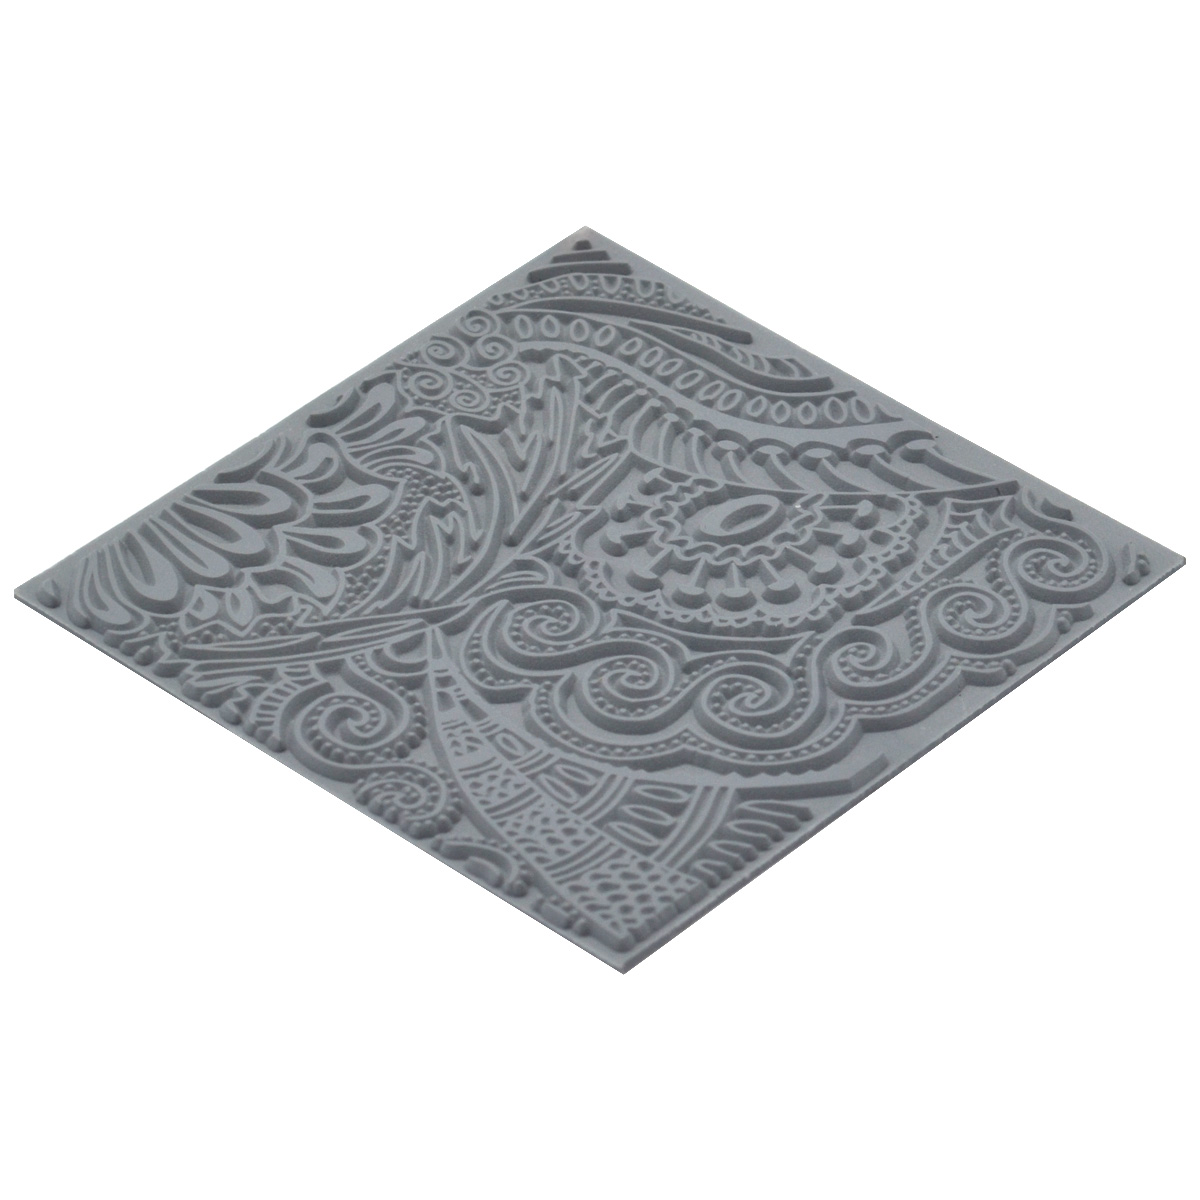 Текстура для пластики резиновая Моменты, 9x9 см, арт. CE95002 Cernit